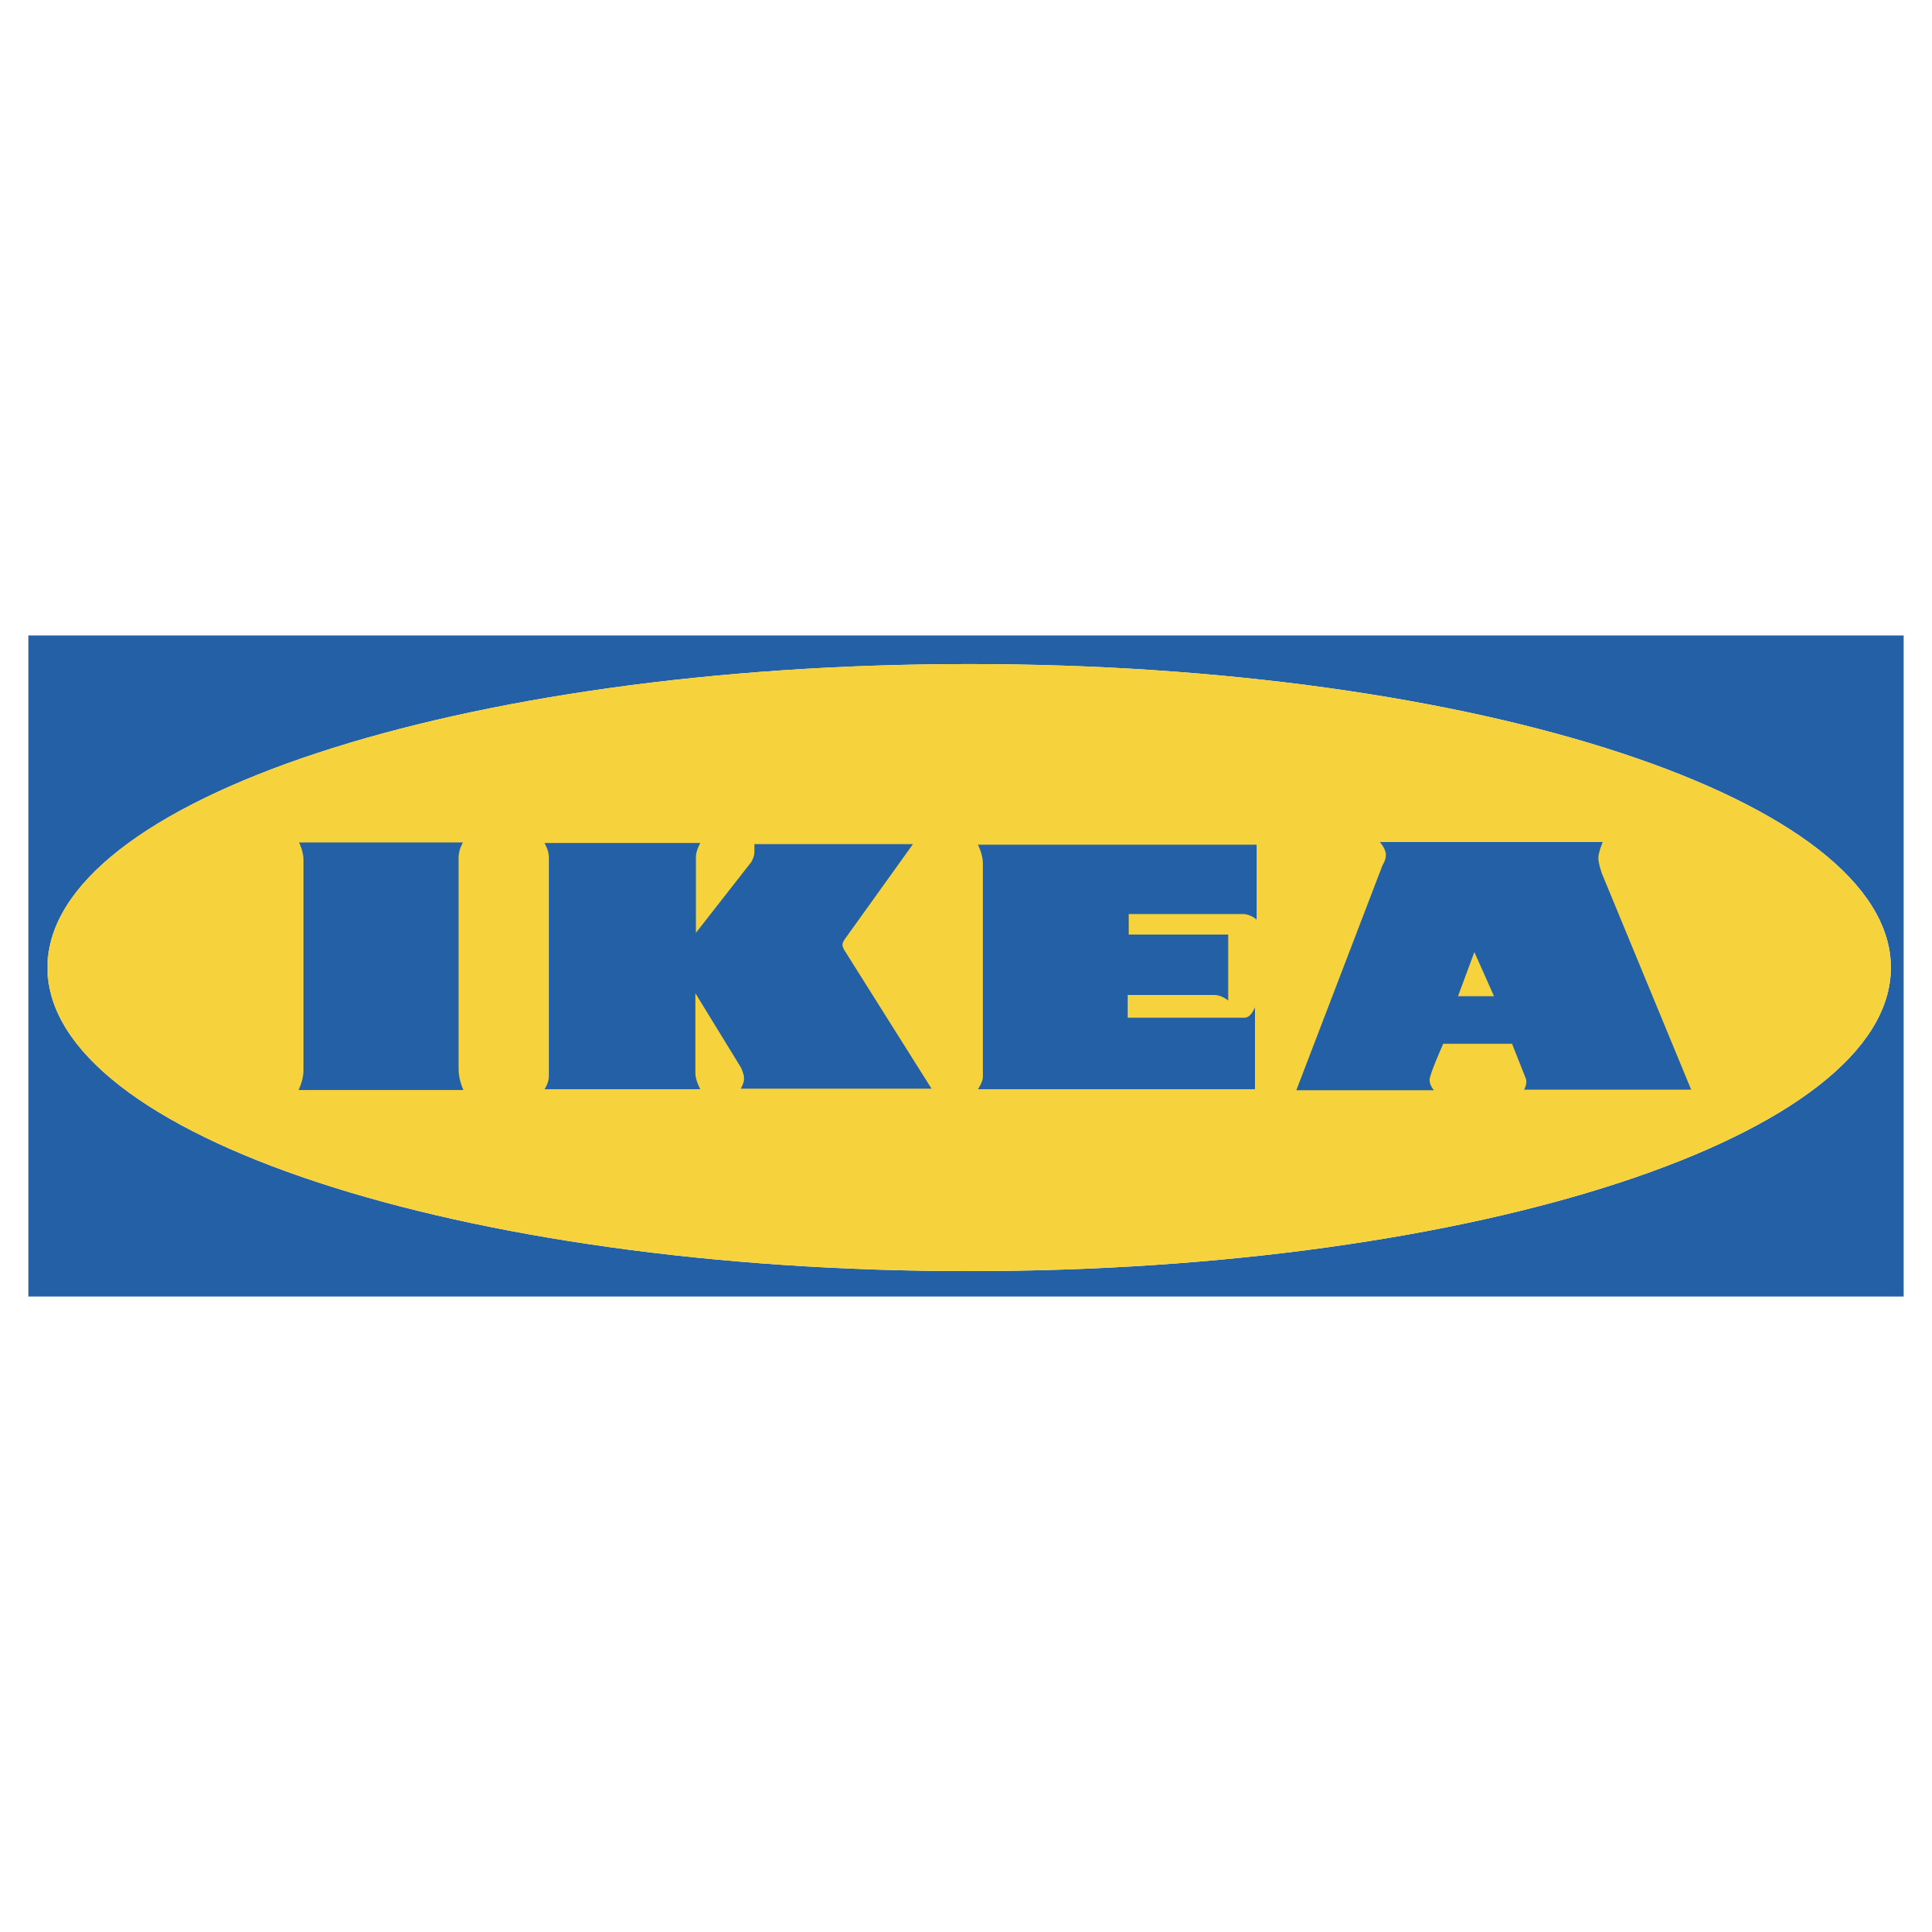 Ikea-logo - Price Adjust